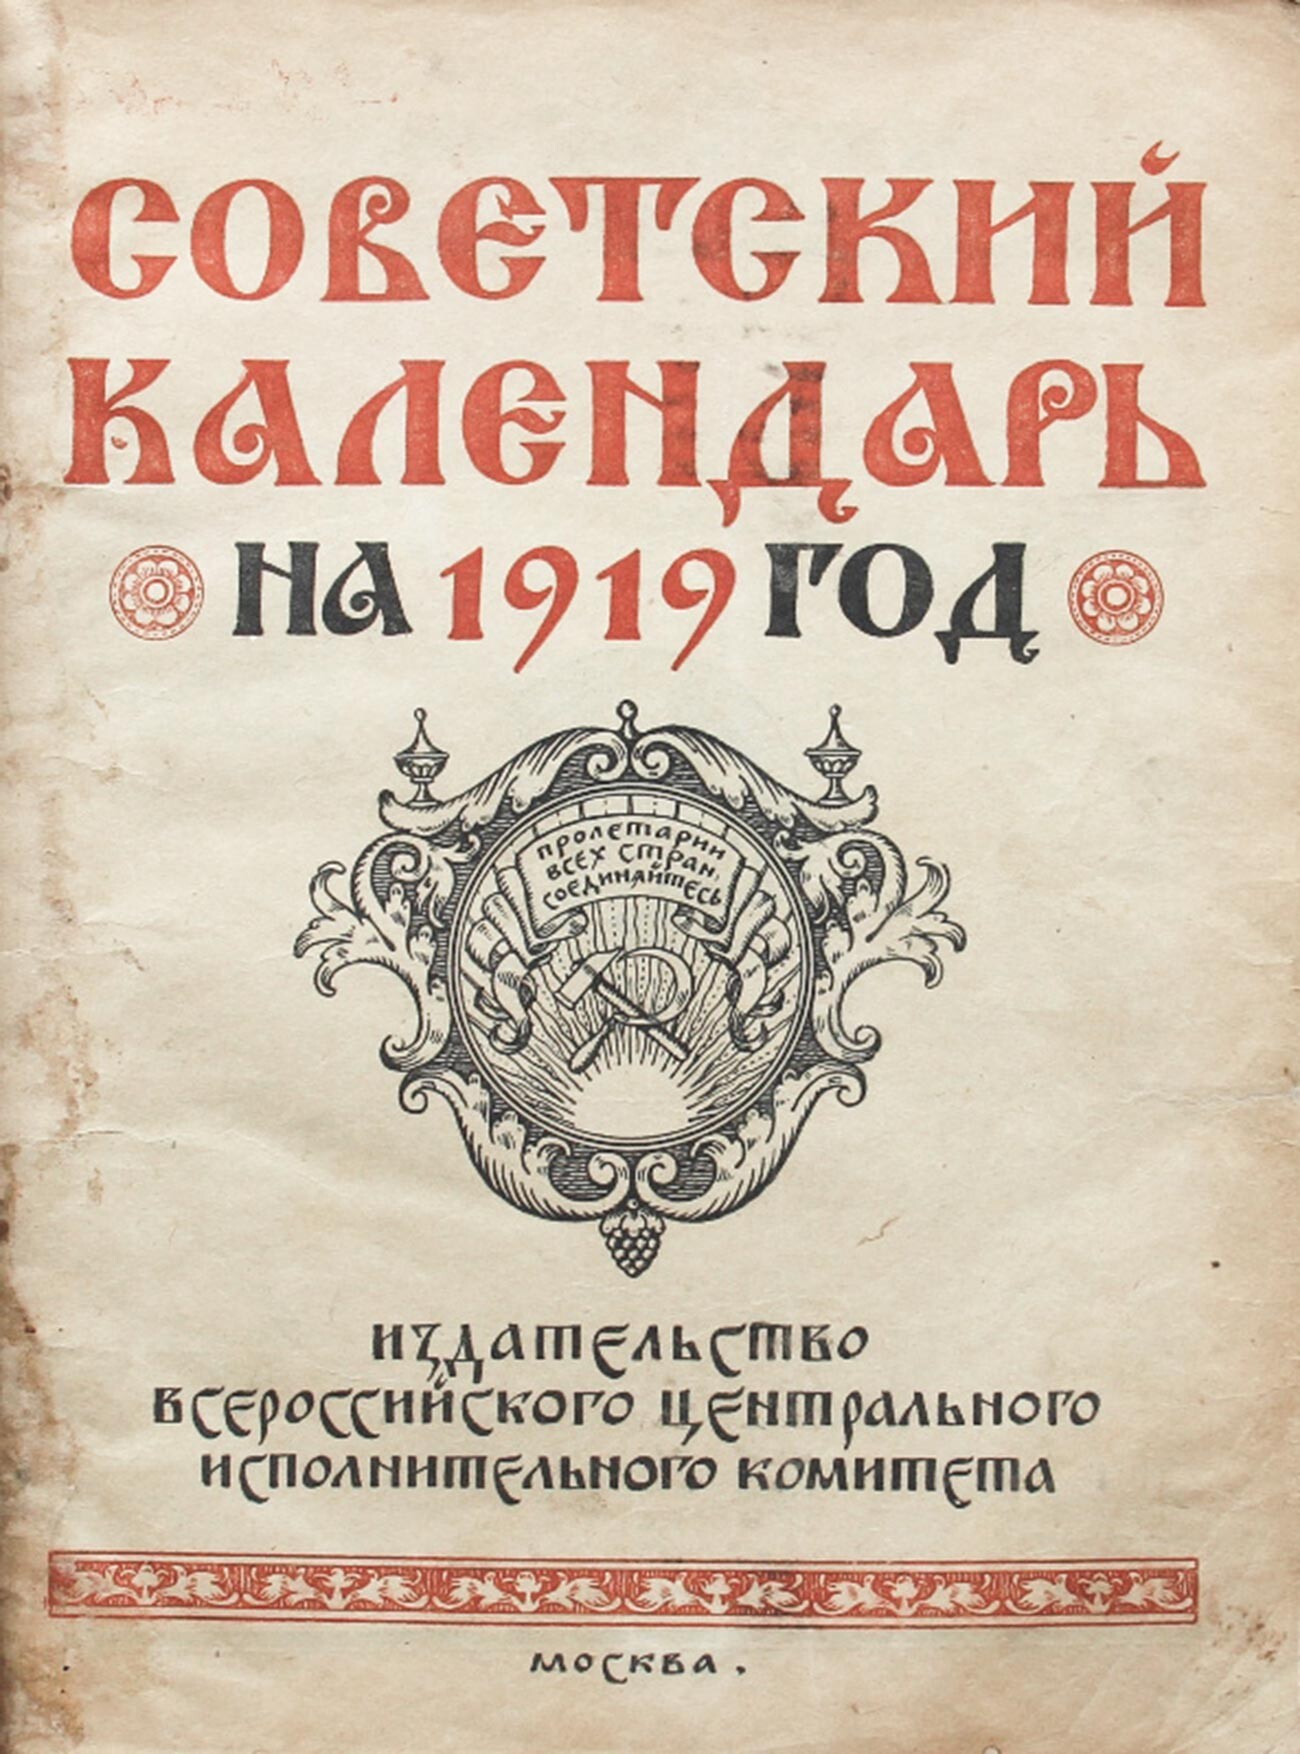 La copertina di un calendario sovietico
